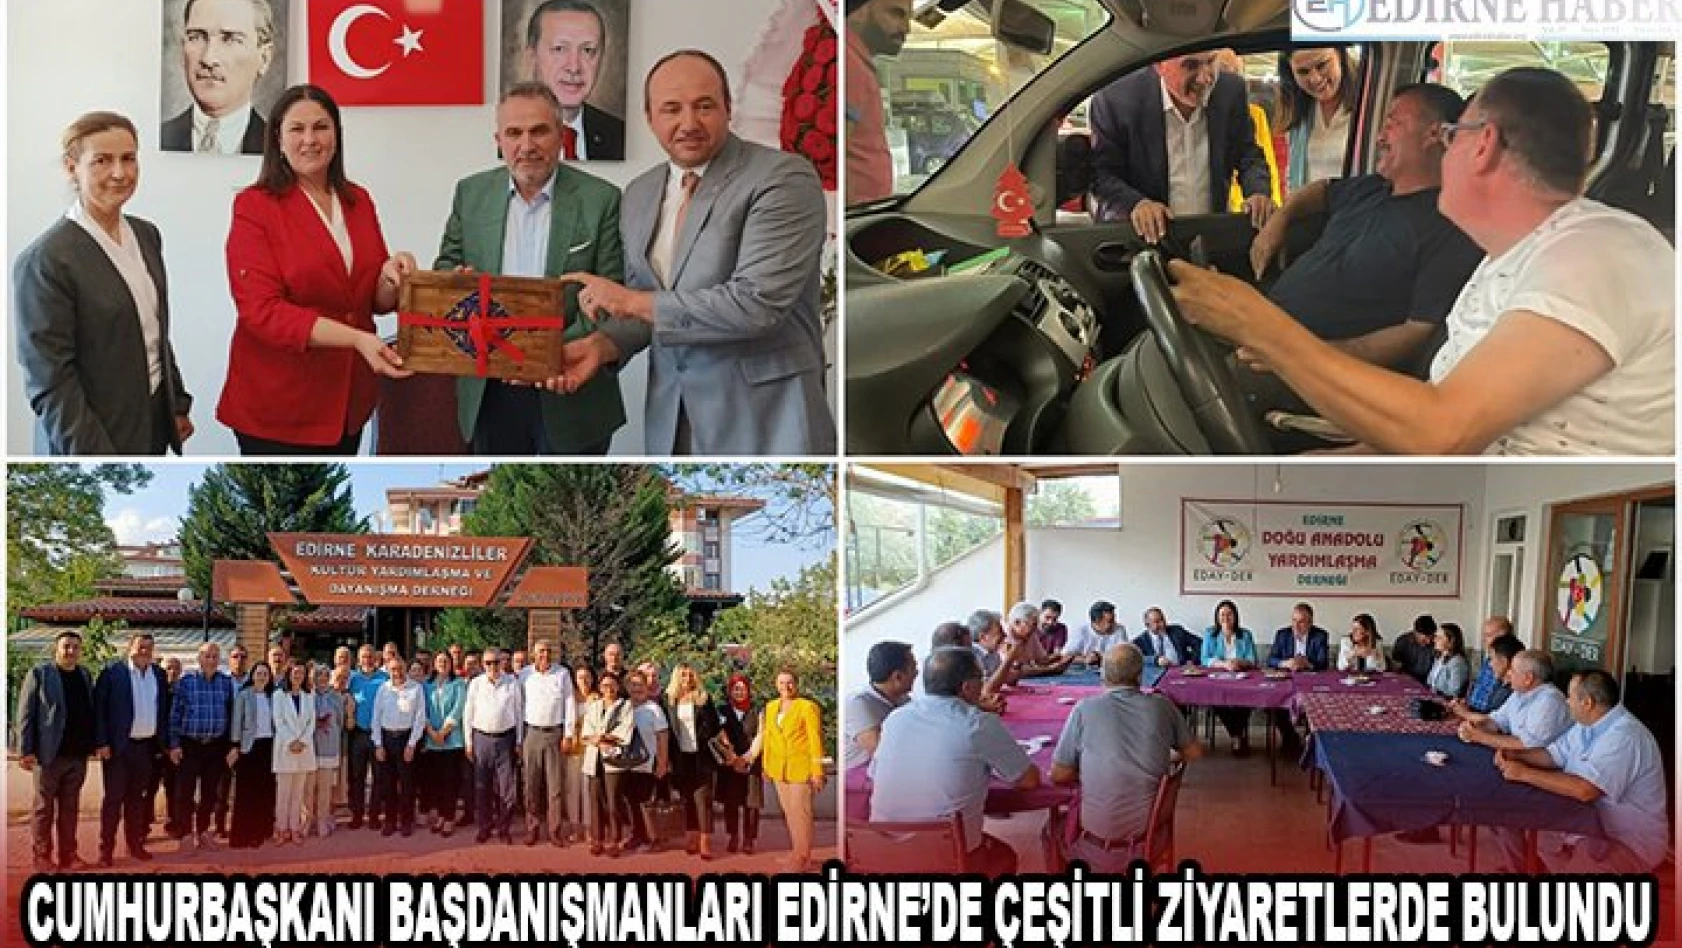 Cumhurbaşkanı Başdanışmanları Edirne'de çeşitli ziyaretlerde bulundu